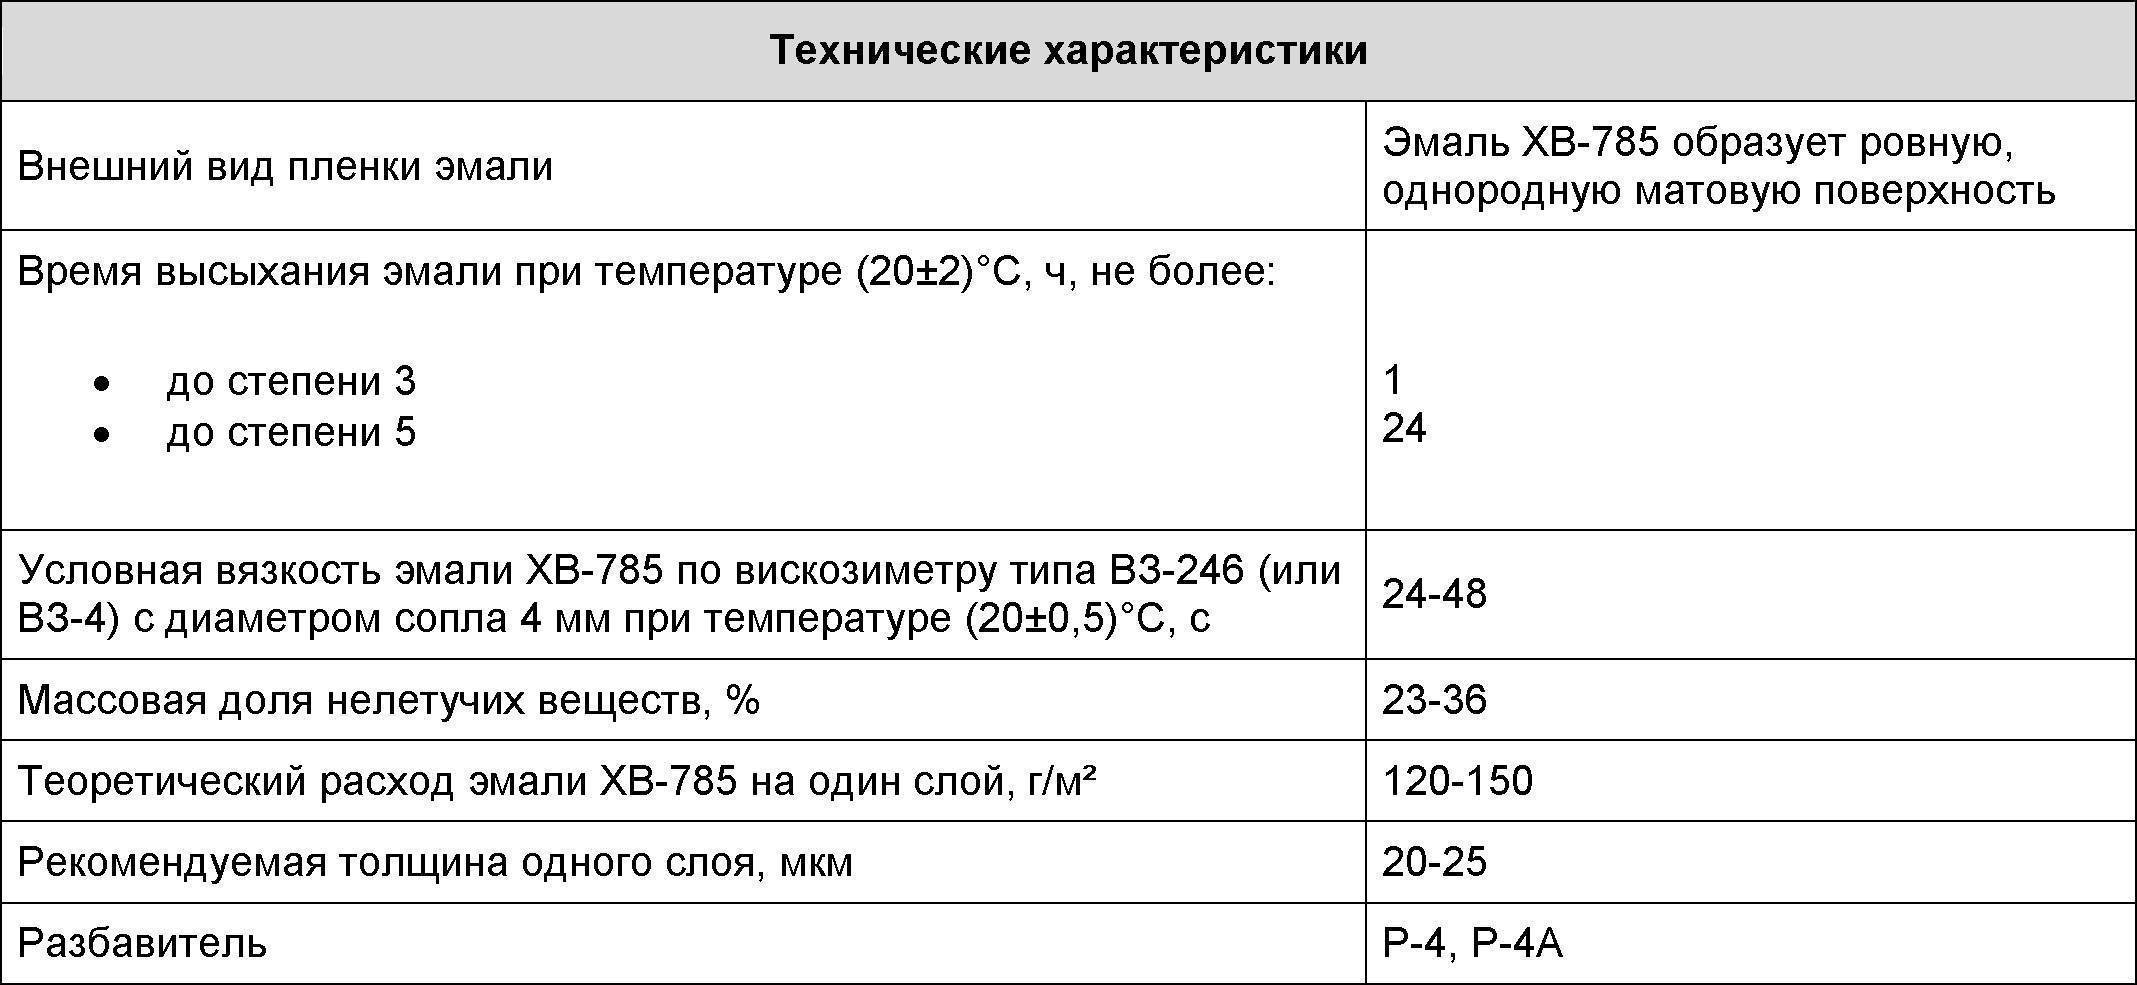 Эмаль хв-785: технические характеристики и особенности применения, расход кислостойких черных и белых покрытий на 1 м2